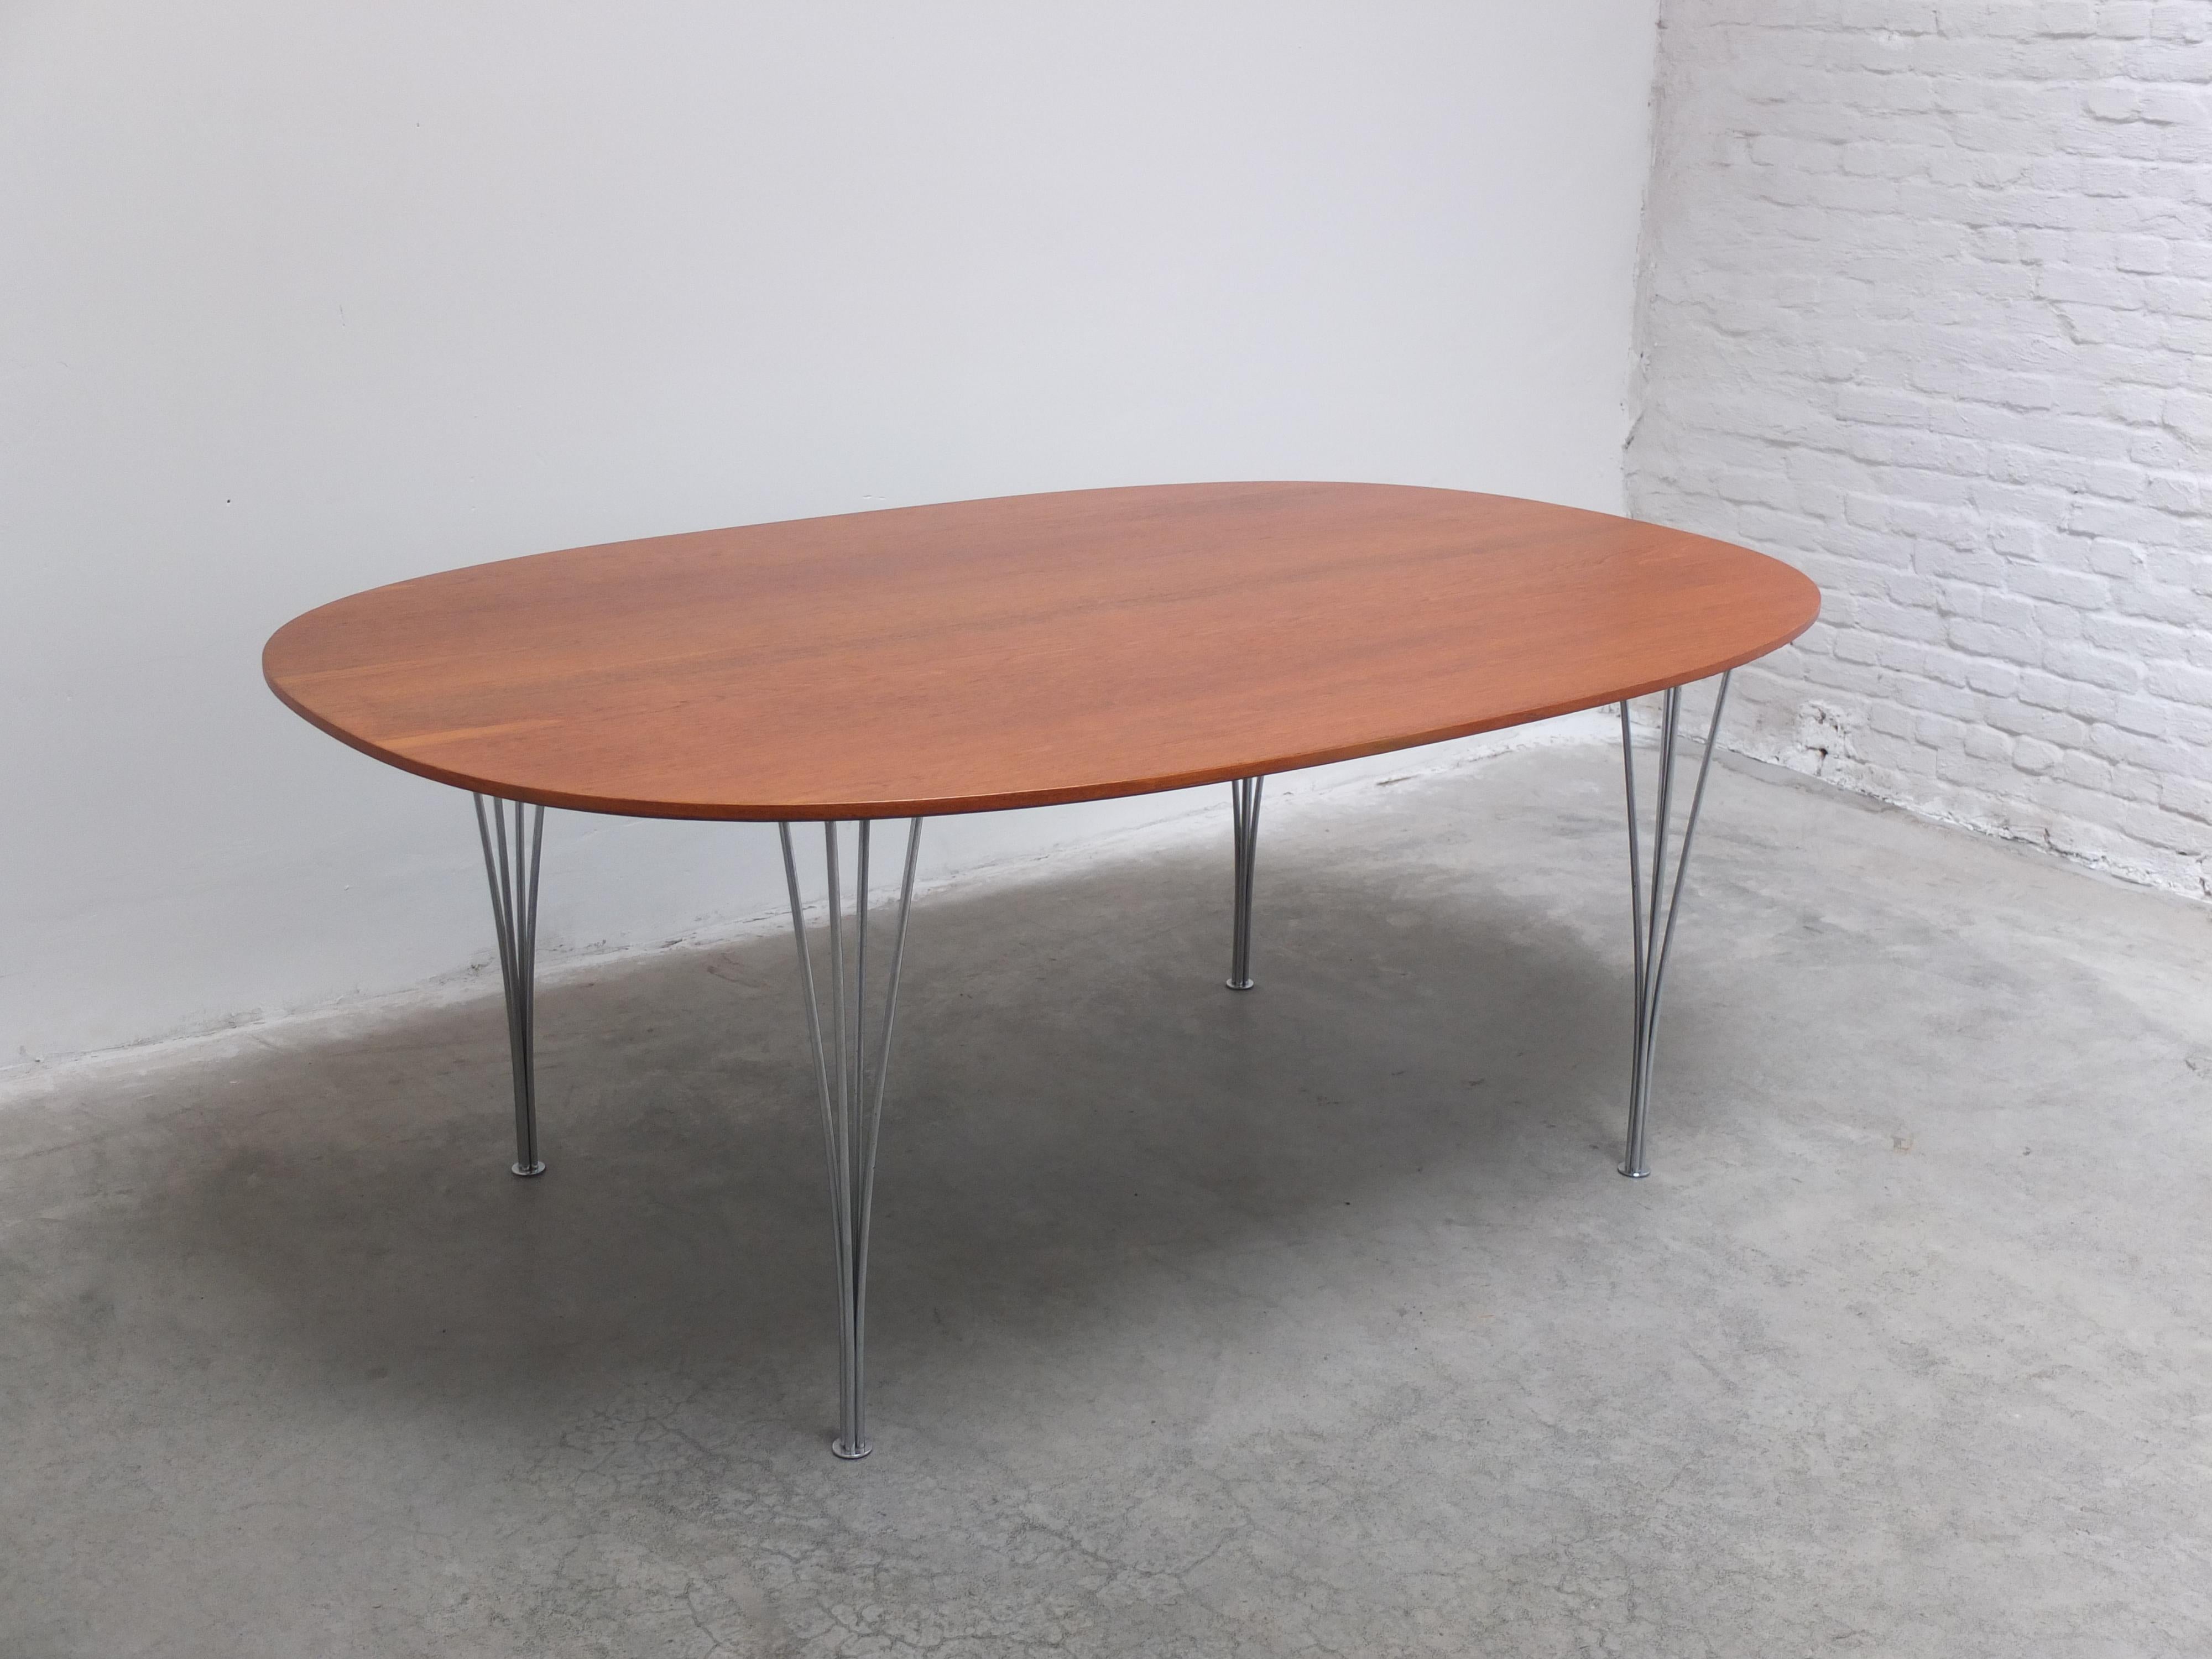 Danish Teak Super-Elliptical Table by Piet Hein & Bruno Mathsson for Fritz Hansen, 1981